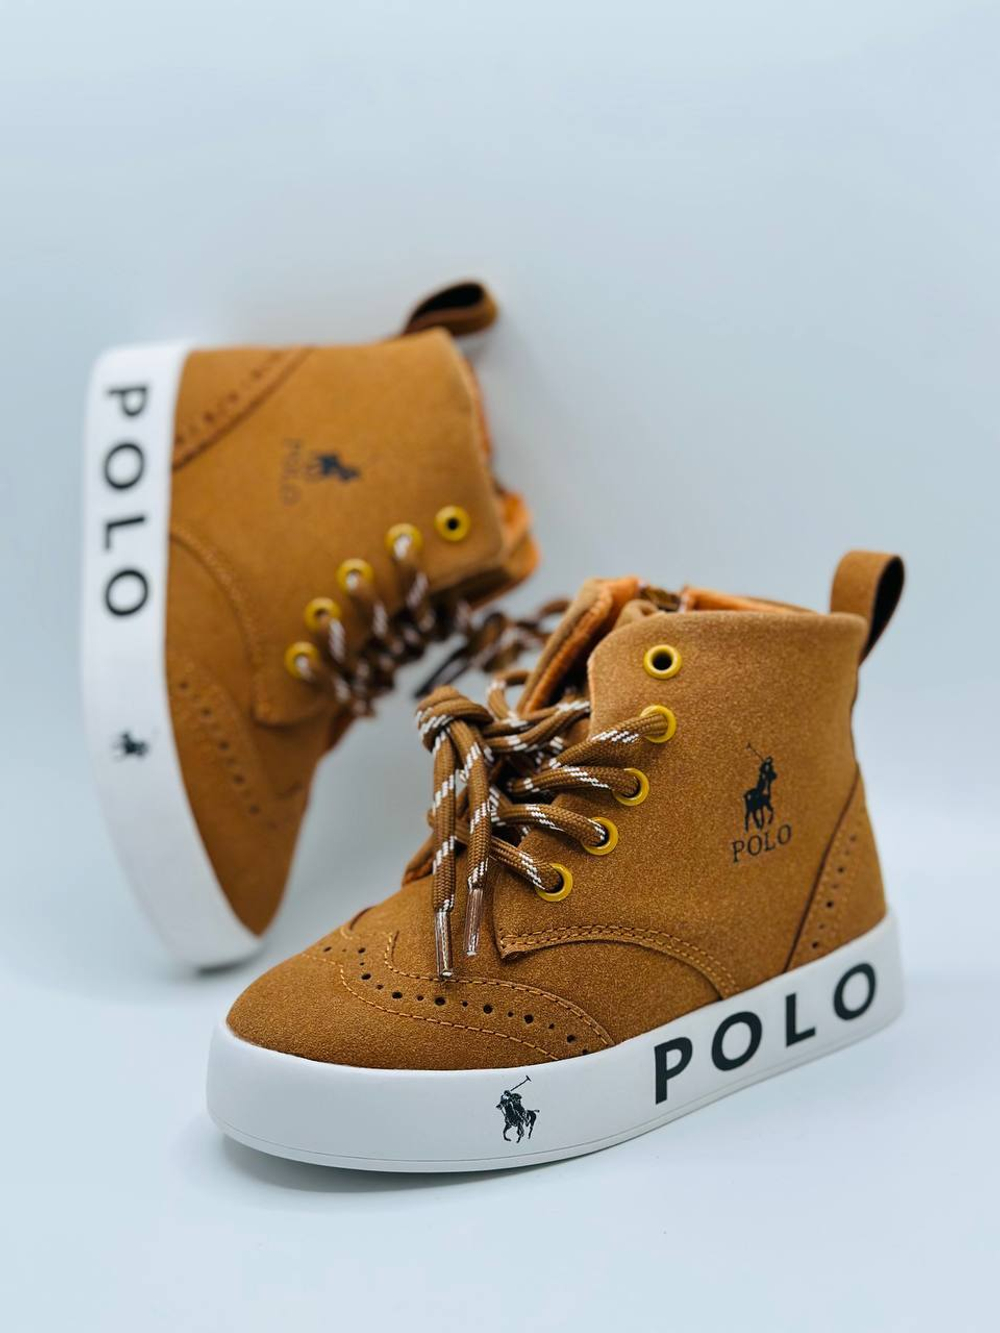 Осенние ботинки Buba Polo